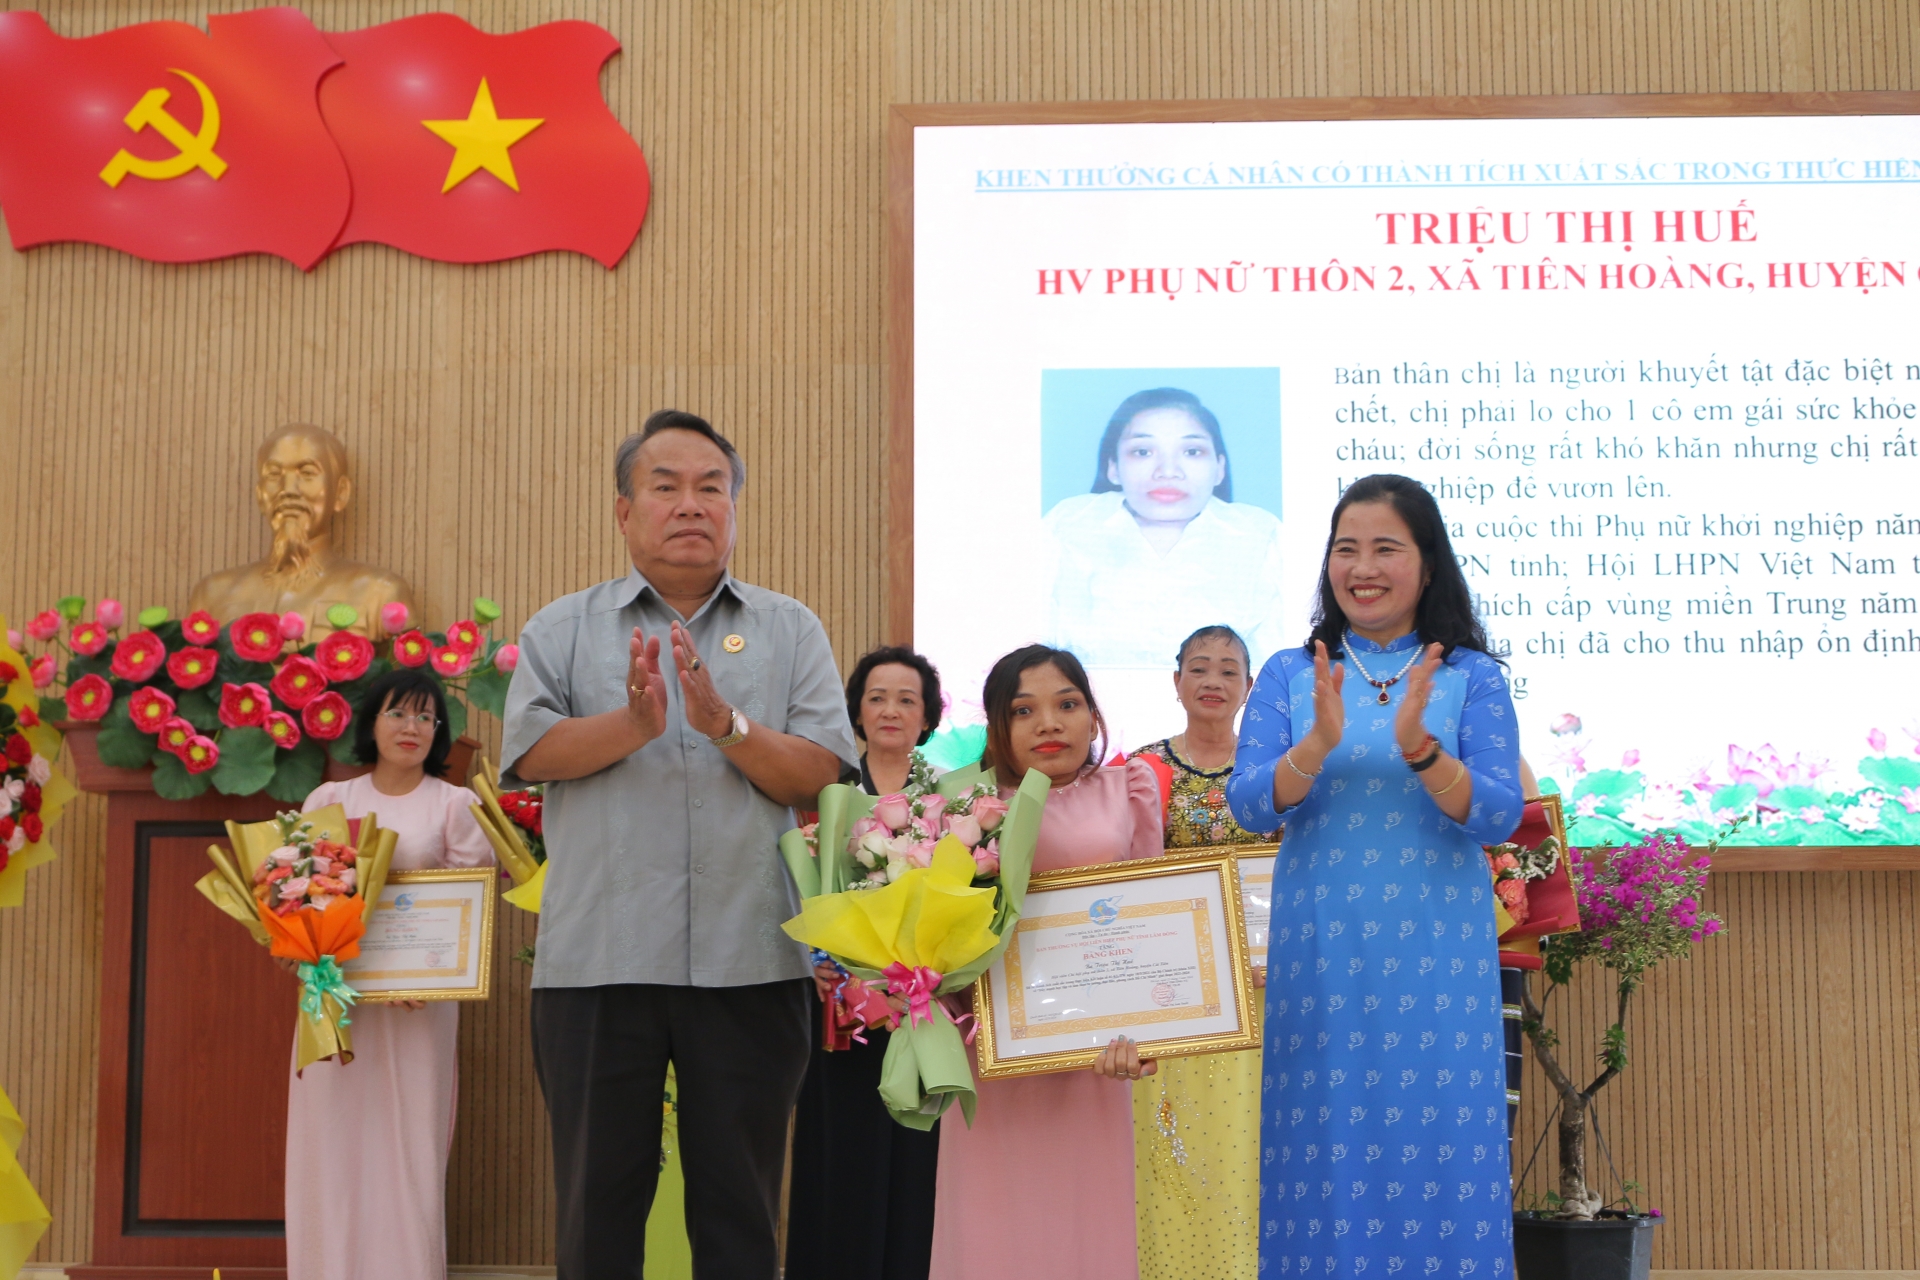 Bà Phạm Thị Ánh Tuyết - Chủ tịch Hội LHPN tỉnh và ông Dương Công Hiệp - Phó Chủ tịch Hội Cựu chiến binh tỉnh tặng hoa và bằng khen cho hội viên phụ nữ khuyết tật có nhiều nỗ lực vươn lên trong cuộc sống